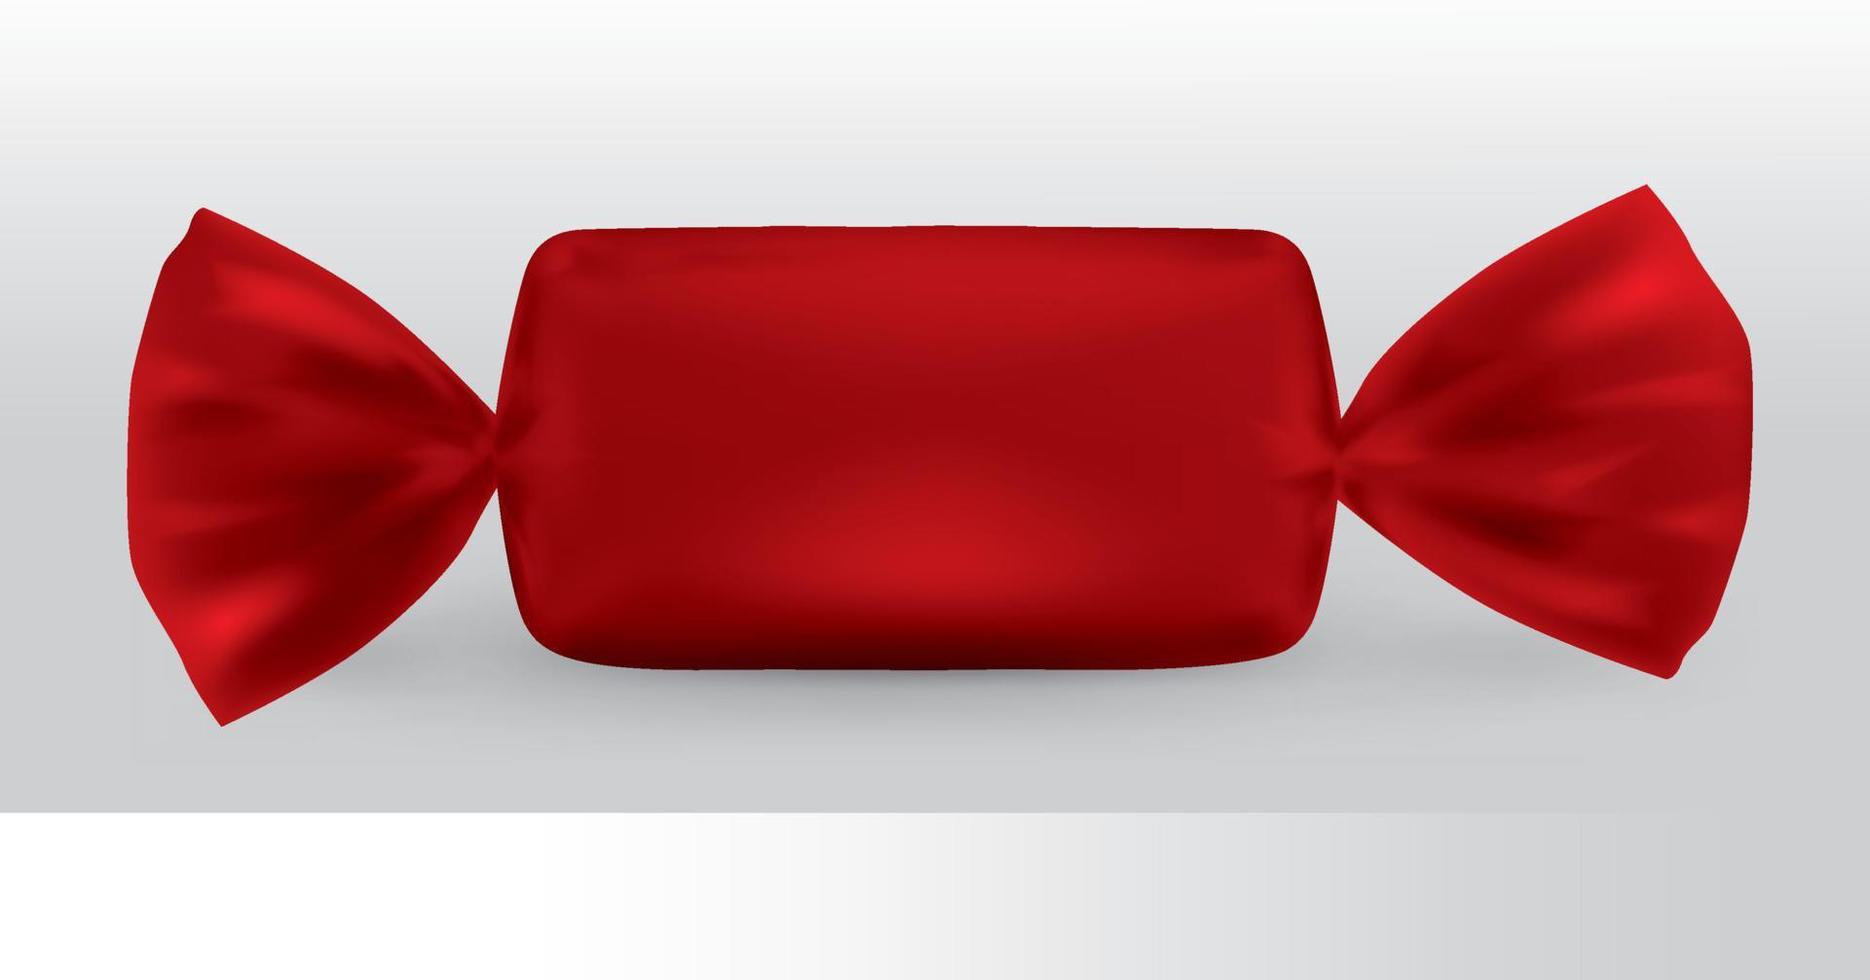 rotes rechteckiges Bonbonpaket für neues Design, Isolierung des Produkts auf weißem Hintergrund mit Reflexionen und rote Lötfarbe. vektor